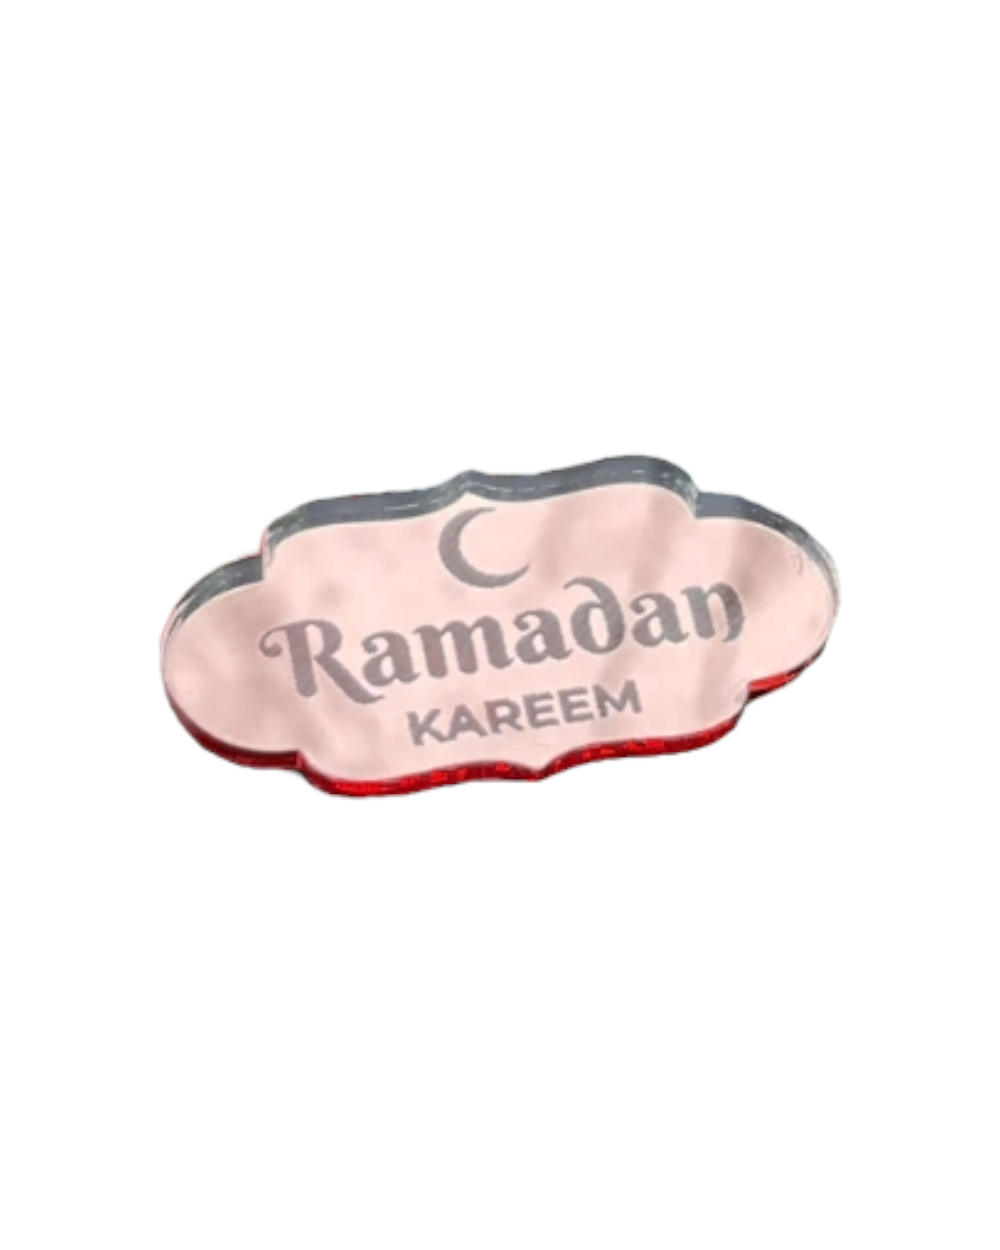 Ramadan Kareem cupcake topper - Pink